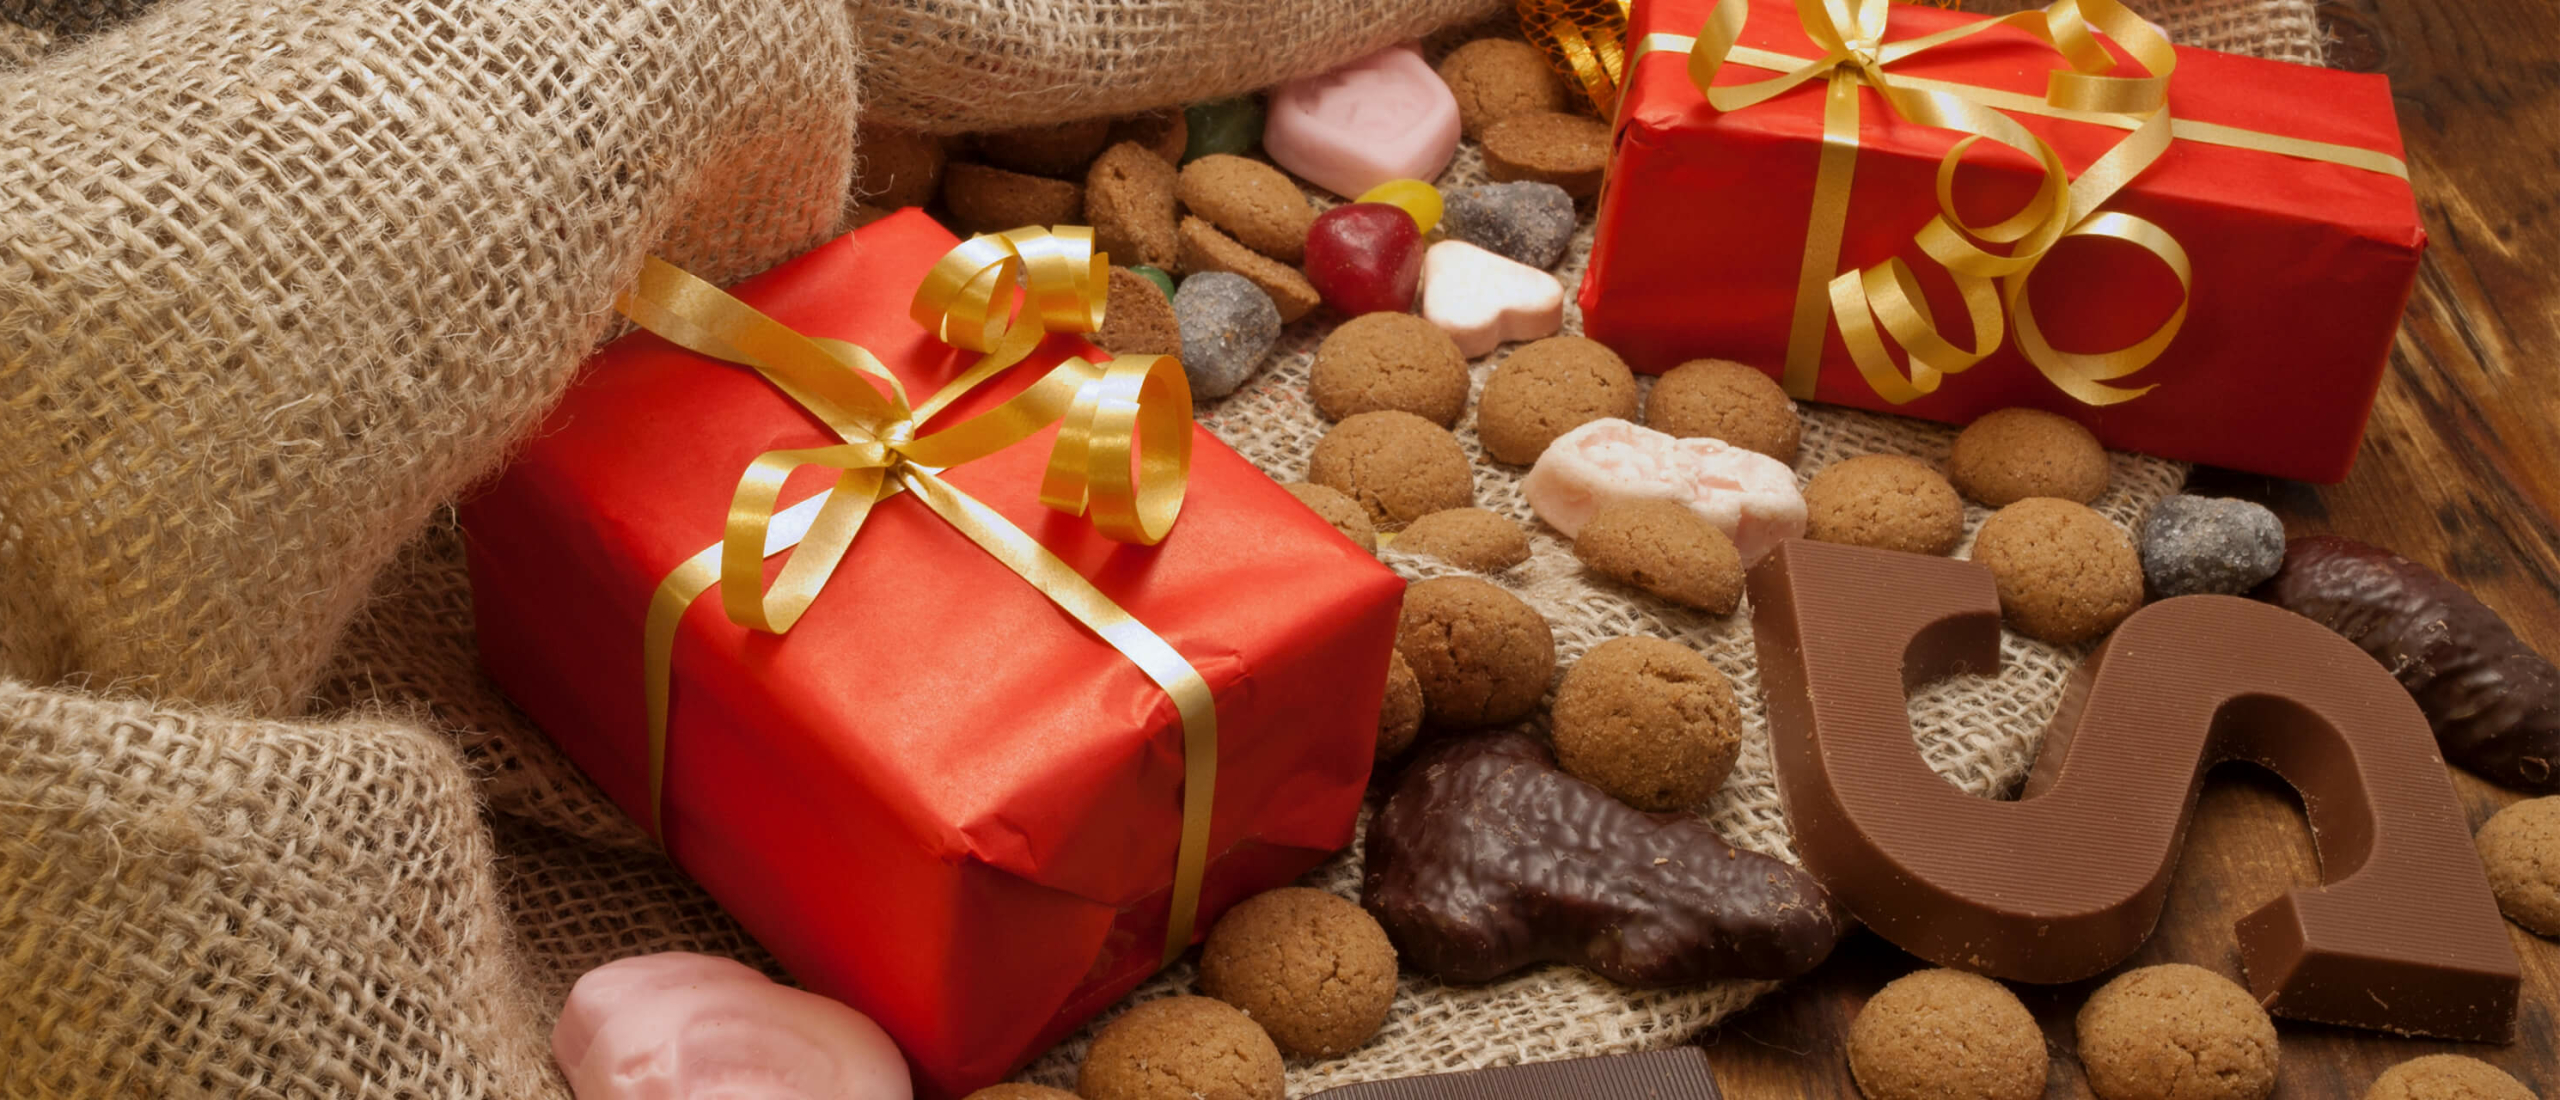 Op zoek naar inspiratie voor de leukste Sinterklaas cadeaus? Bekijk dan deze cadeaus voor je ouders, broertje, zus of vriendin!